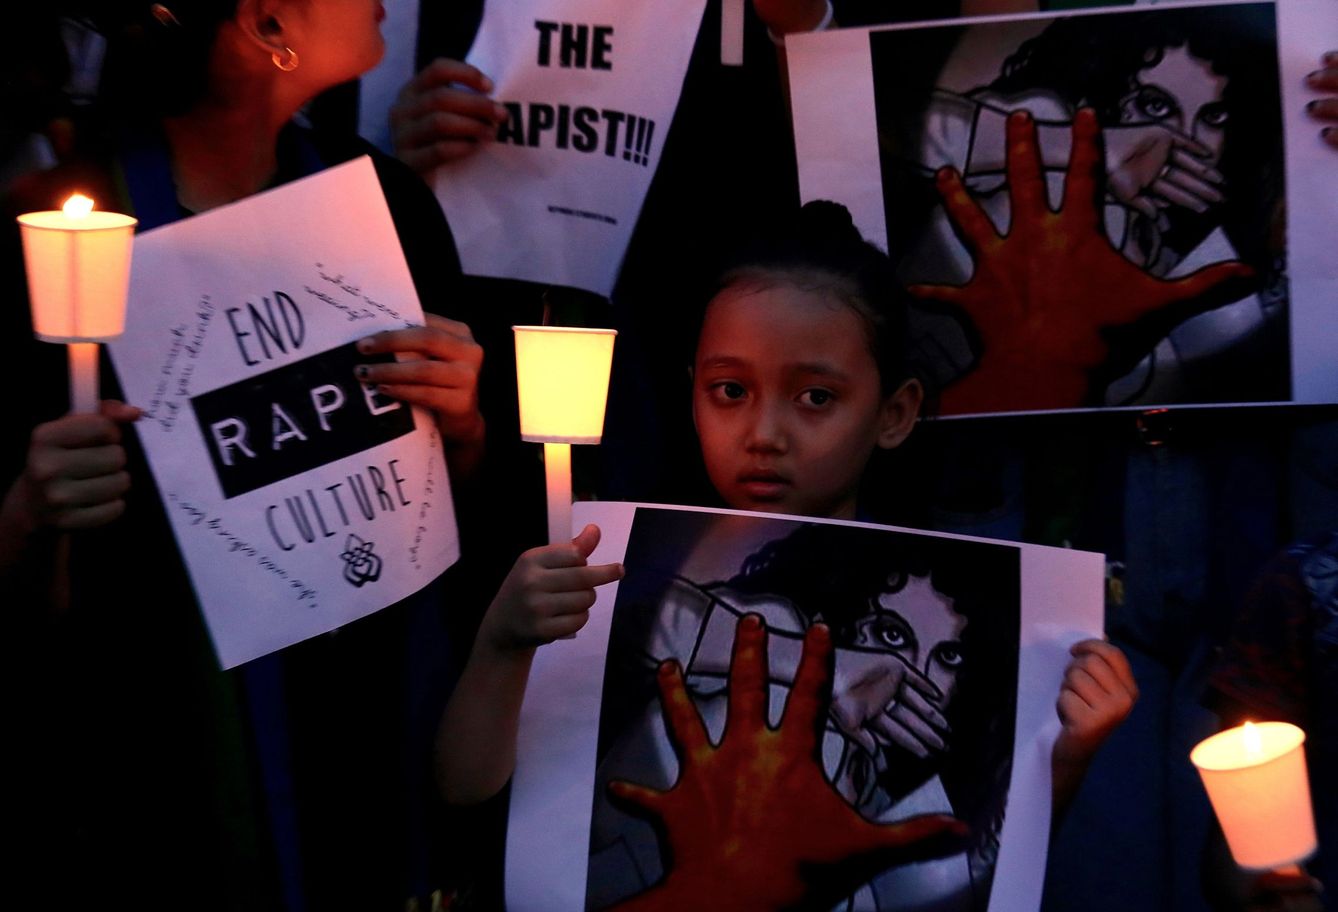 Vigilia para condenar la violación y el asesinato de la joven Asifa, de 8 años, en Bangalore (India) en abril. (EFE)